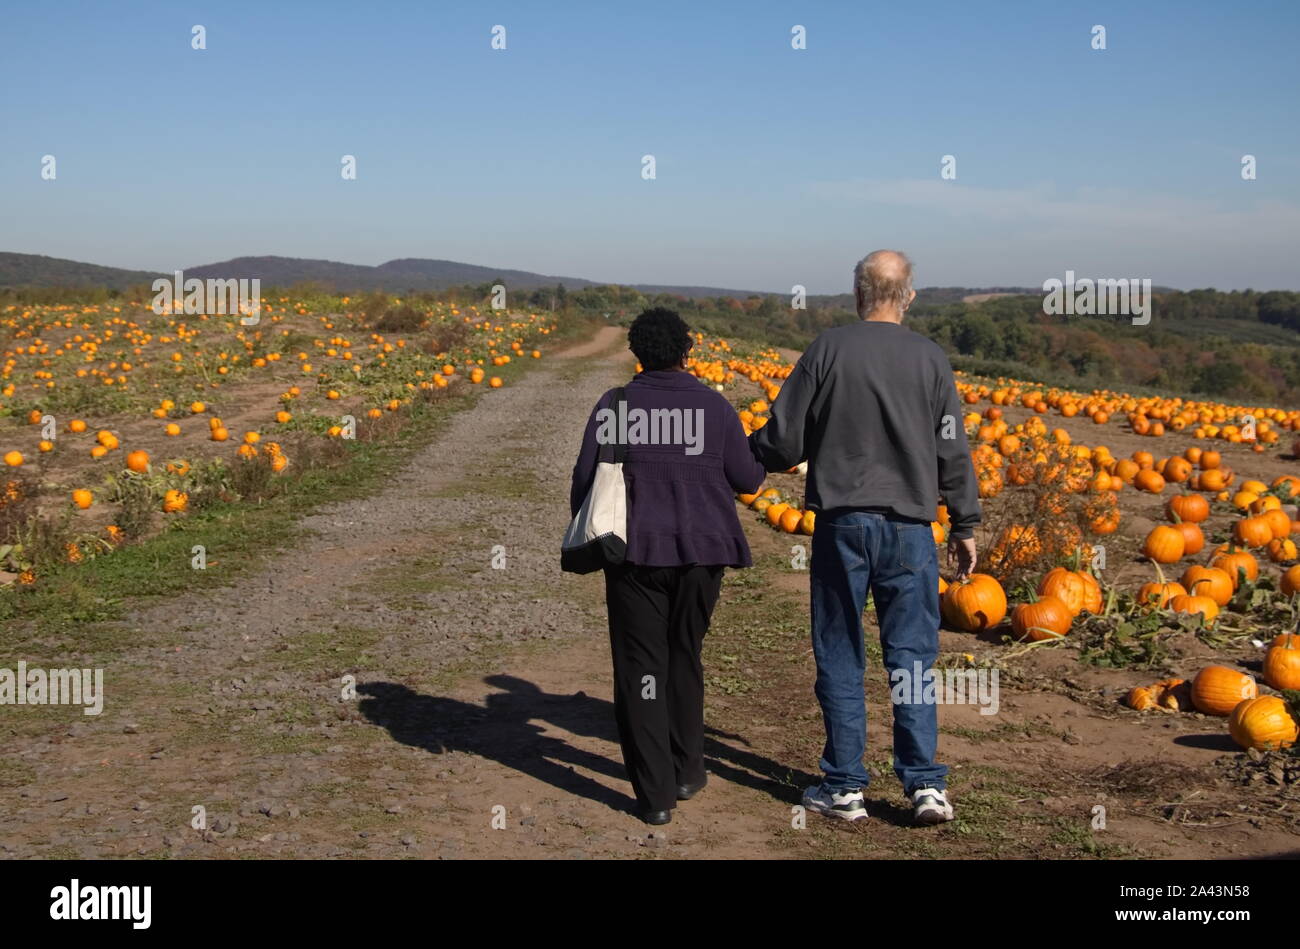 Middlefield, CT/USA - Oktober 19, 2017: Ältere schwarze Frau führt ihre weißen Ehemann durch einen Pumpkin Patch. Stockfoto